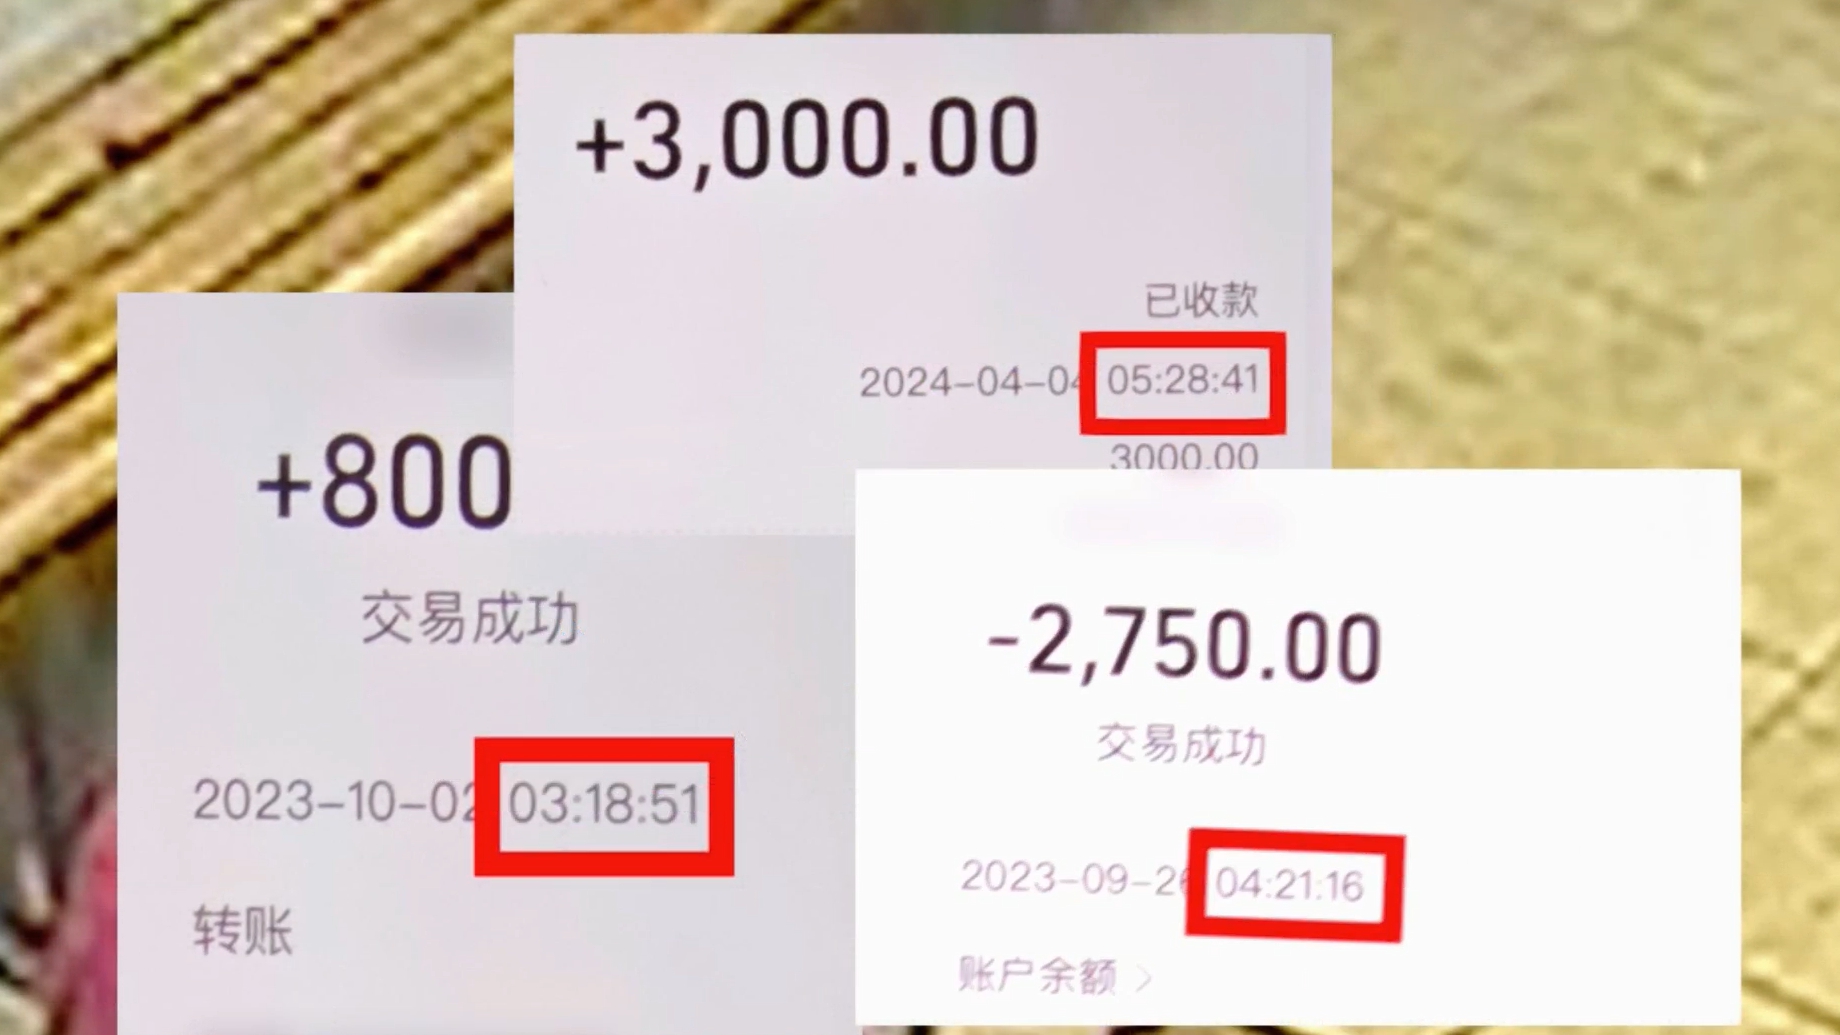 视频 | “男海王”半年盗窃多名女友账户 借贷11万余元被刑拘